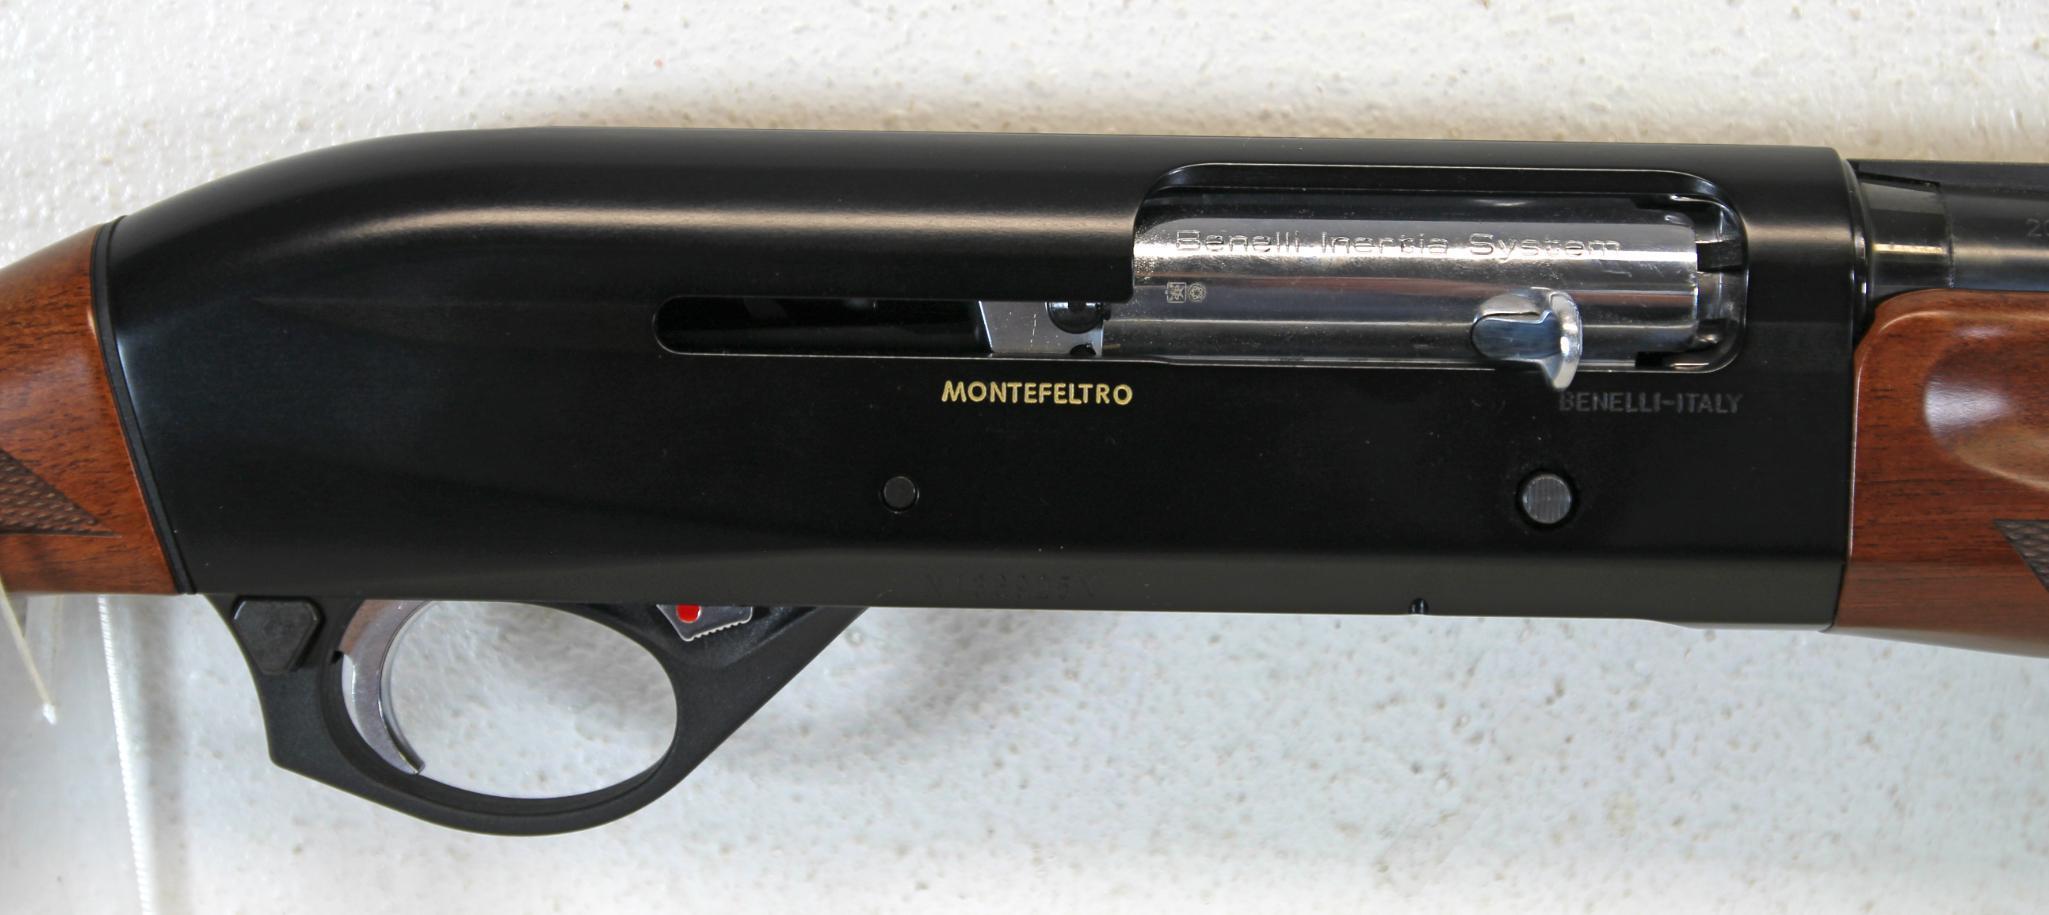 Benelli Montefeltro 20 Ga. Semi-Auto Shotgun in Original Box Lightly Used... 26" VR Barrel... 3"